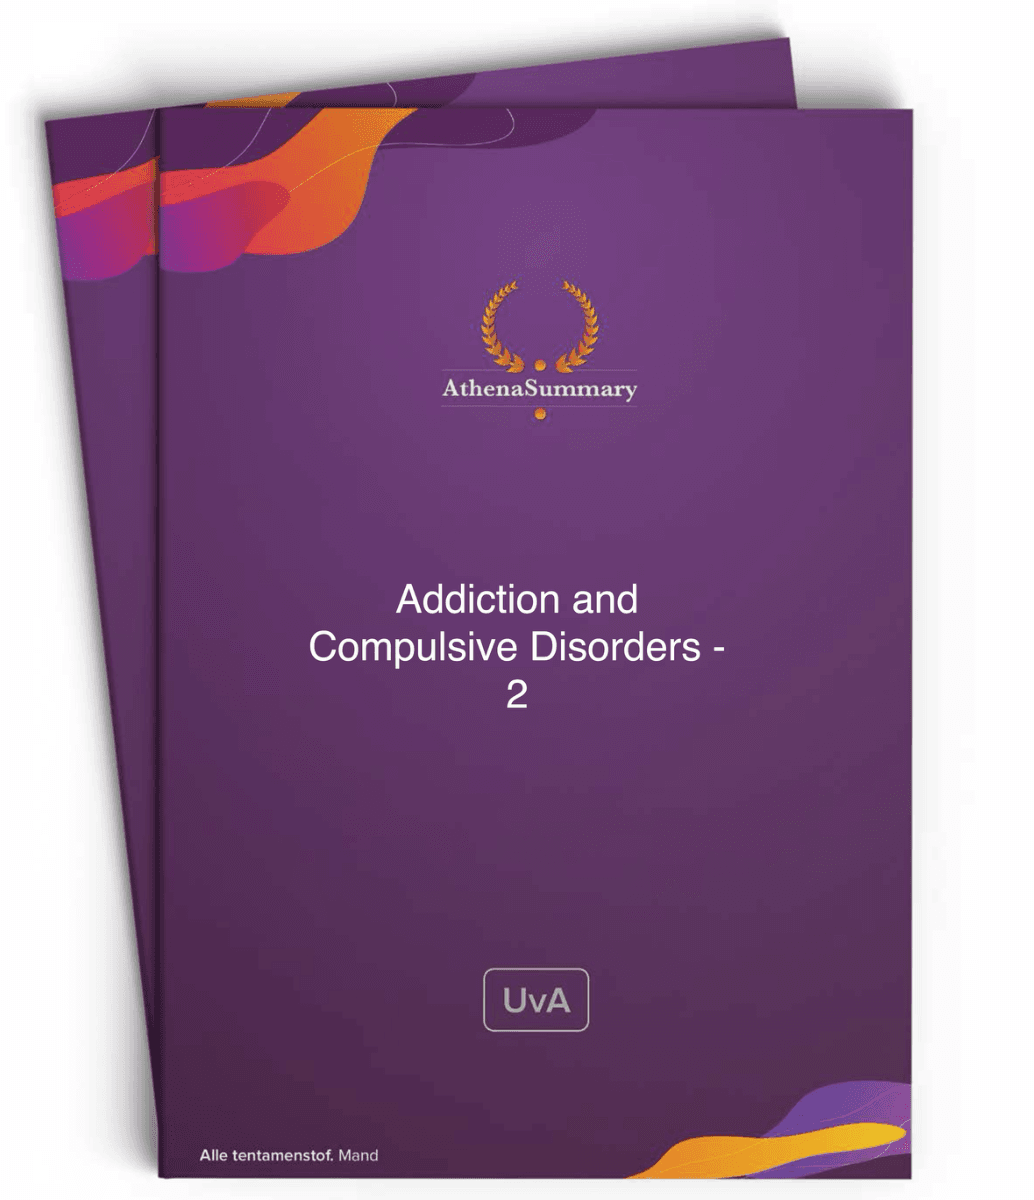 Literature Summary: Addicition and Compulsive Disorders - 2